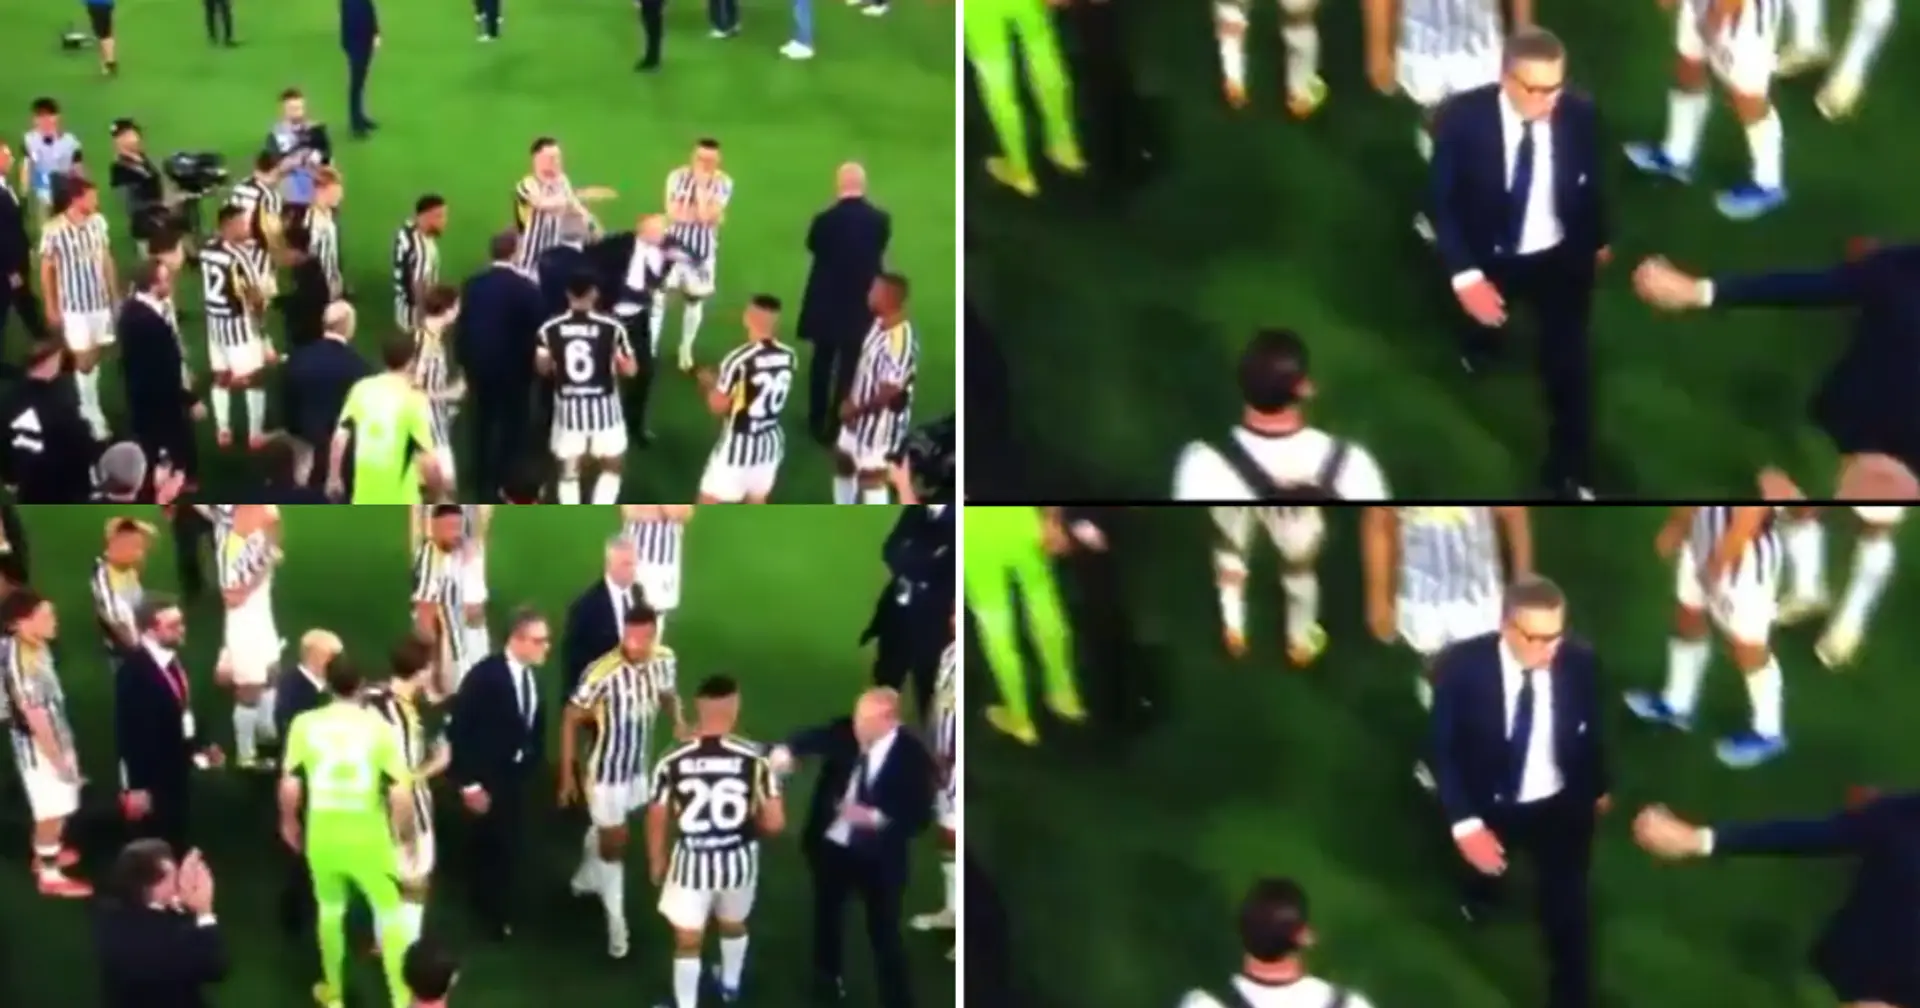 Vittoria con "giallo" per la Juventus in Coppa Italia: il gesto di Allegri a Giuntoli durante la festa non è passato inosservato